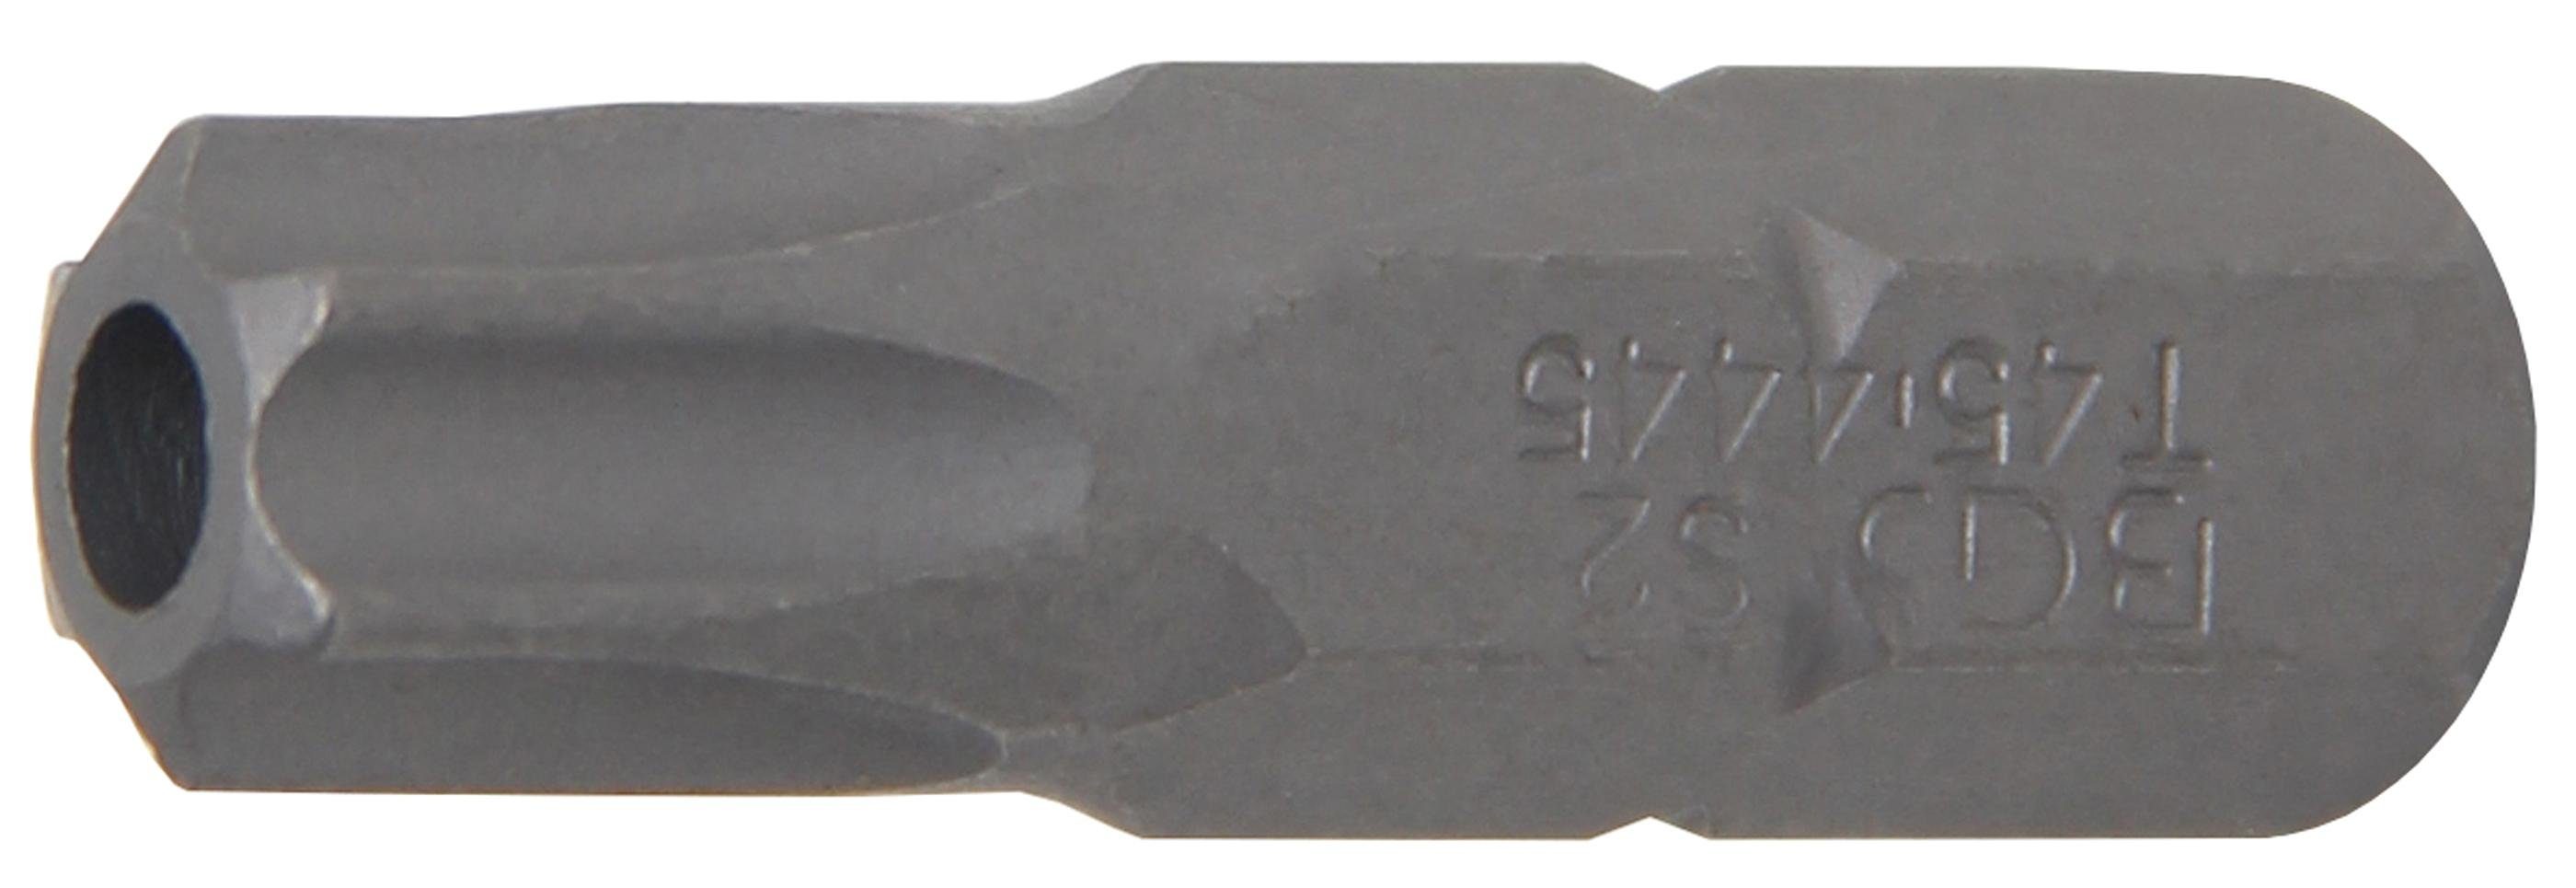 BGS technic Bit-Schraubendreher Bit, Länge 30 mm, Antrieb Außensechskant 8 mm (5/16), T-Profil (für Torx) mit Bohrung T45 | Schraubendreher